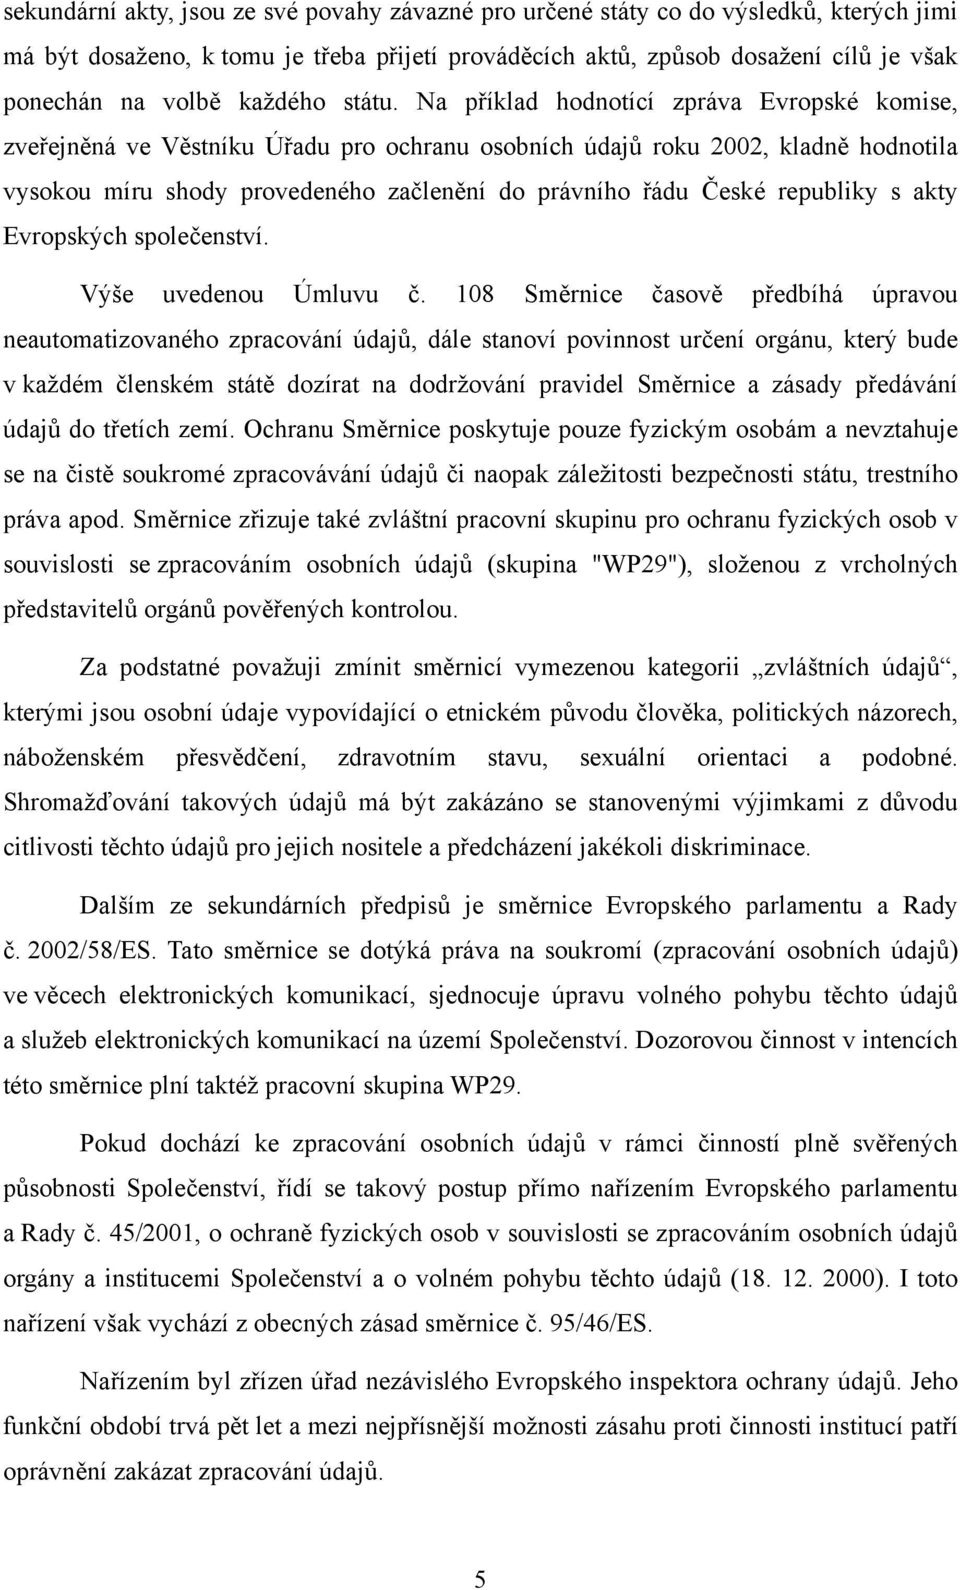 Na příklad hodnotící zpráva Evropské komise, zveřejněná ve Věstníku Úřadu pro ochranu osobních údajů roku 2002, kladně hodnotila vysokou míru shody provedeného začlenění do právního řádu České